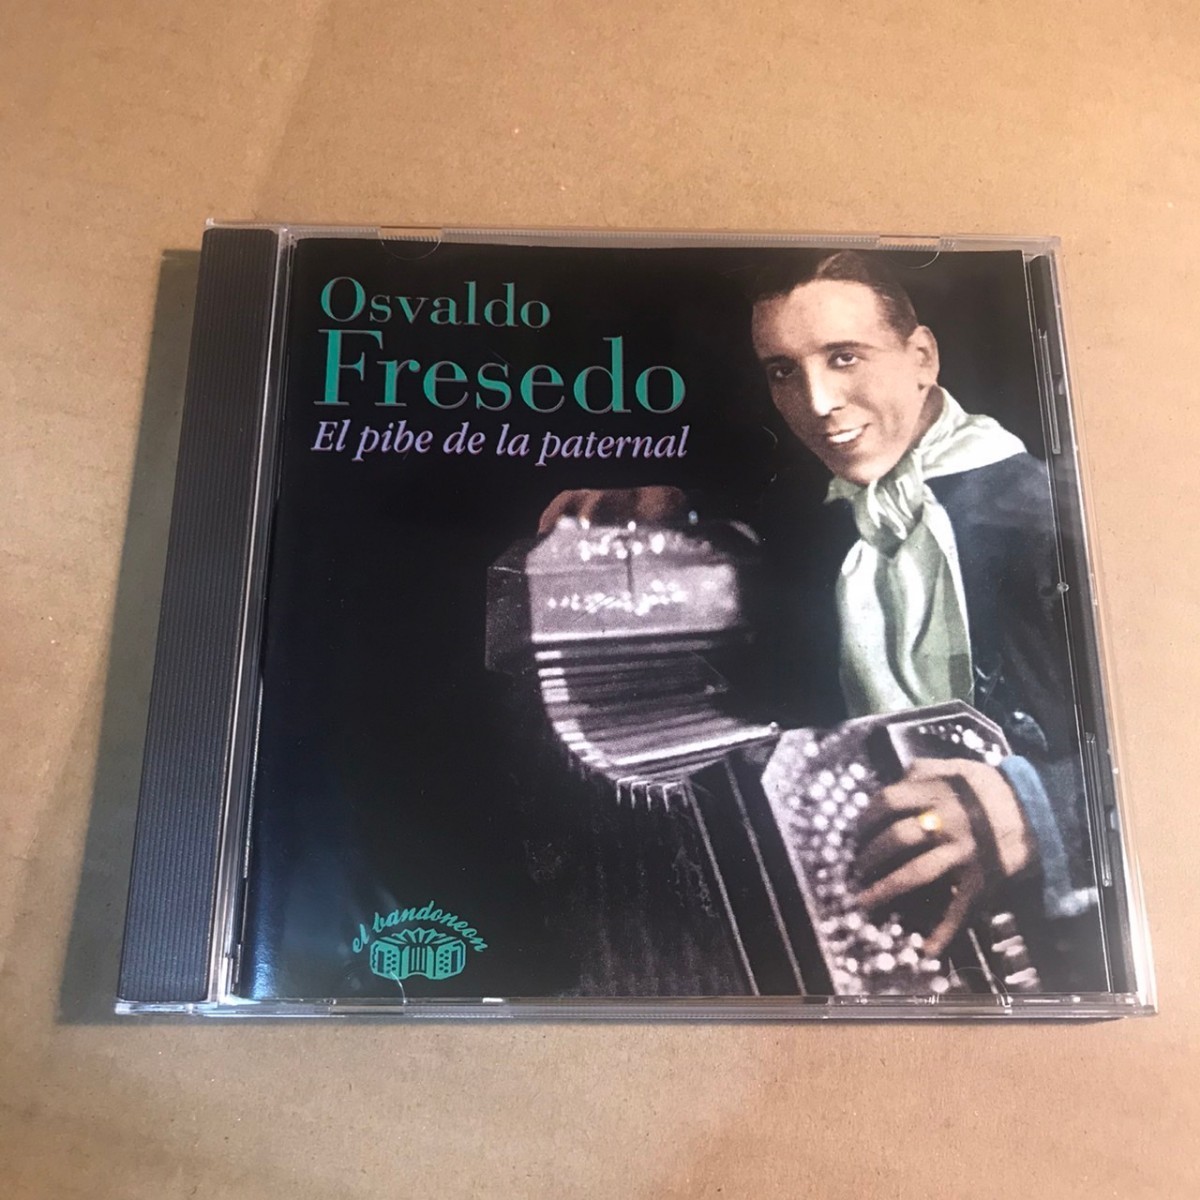 オスバルド・フレセド CD Osvaldo Fresedo EB-CD 49 タンゴ tango _画像1